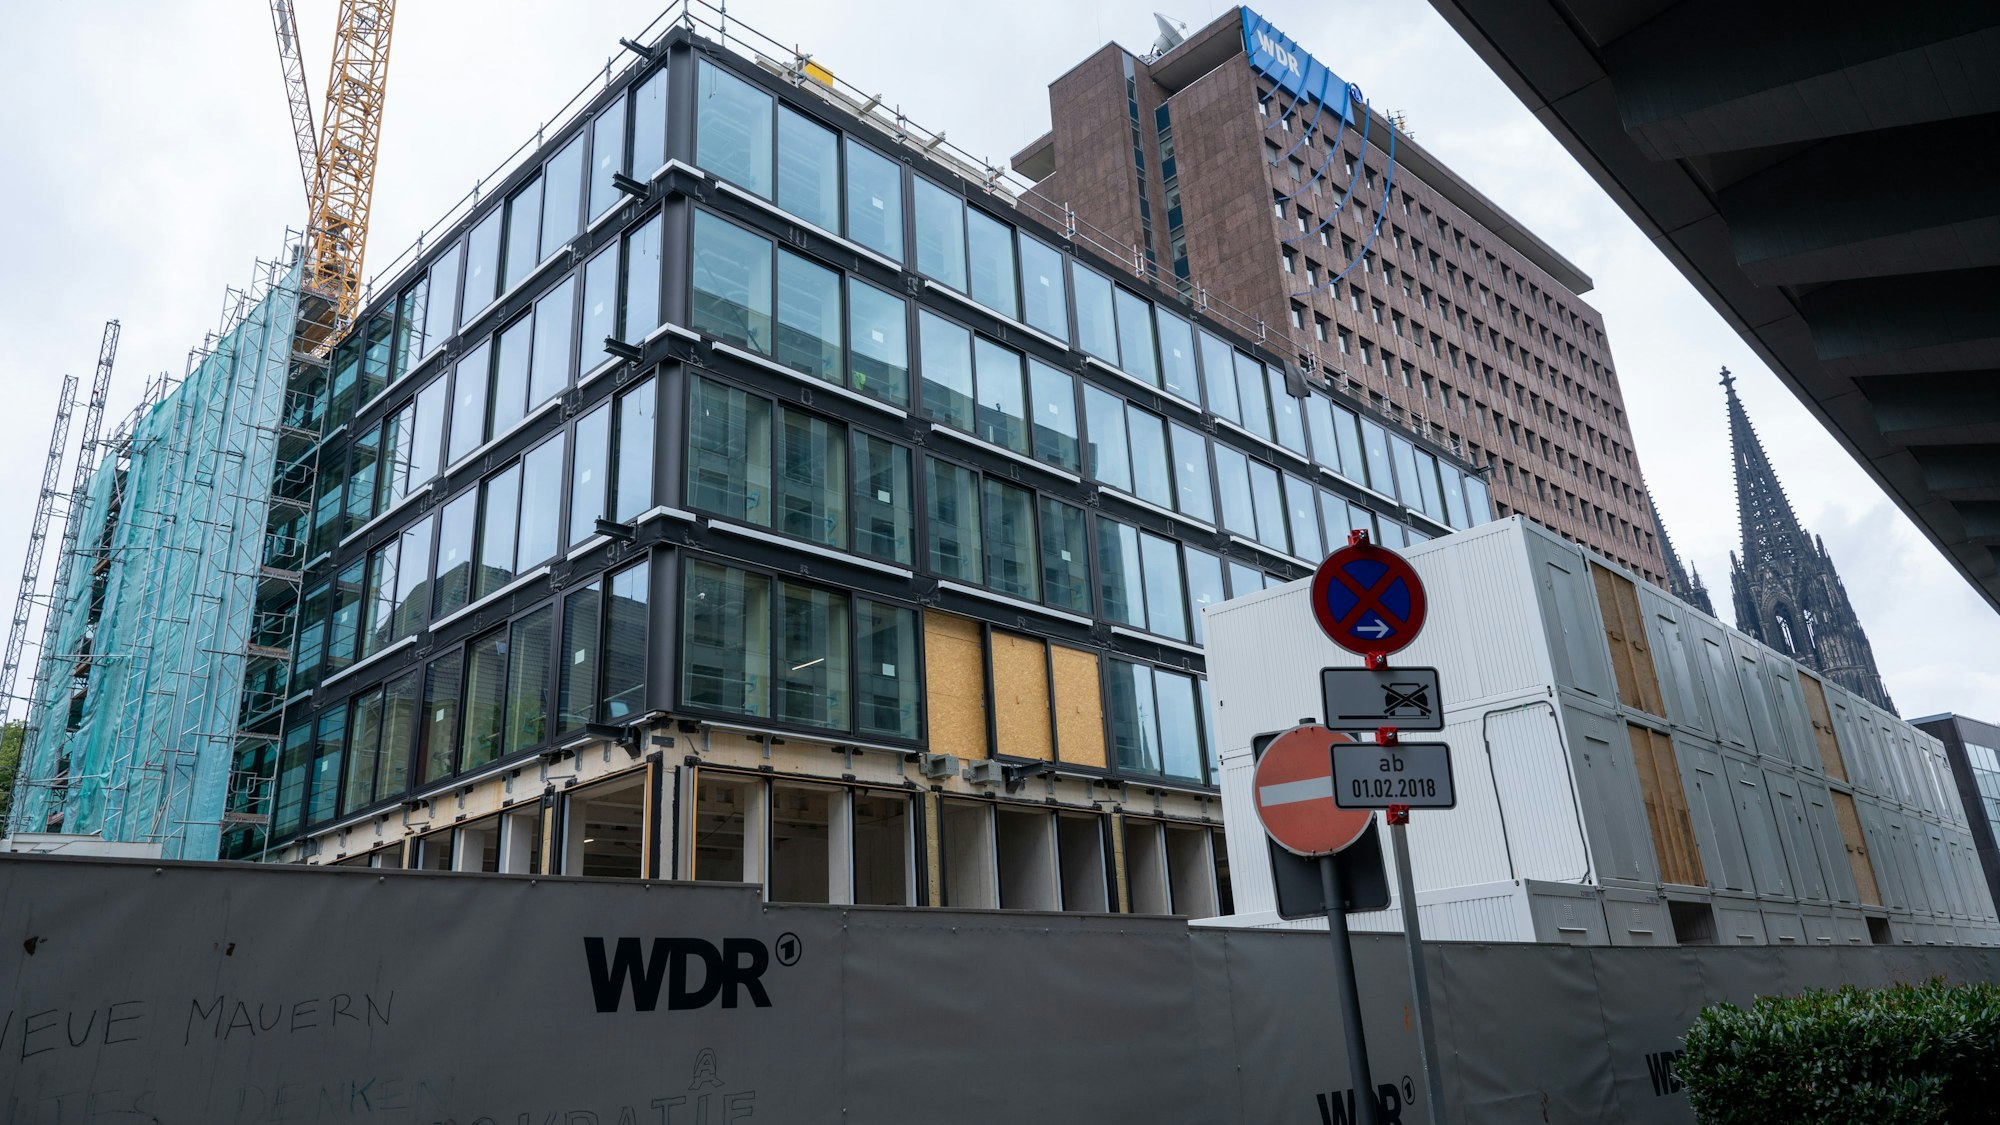 Hinter einem mit den Buchstaben „WDR“ beschriftetem Bauzahn erhebt sich ein mehrgeschossiger Rohbau. In den meisten Etagen sind bereits Fenster eingesetzt.